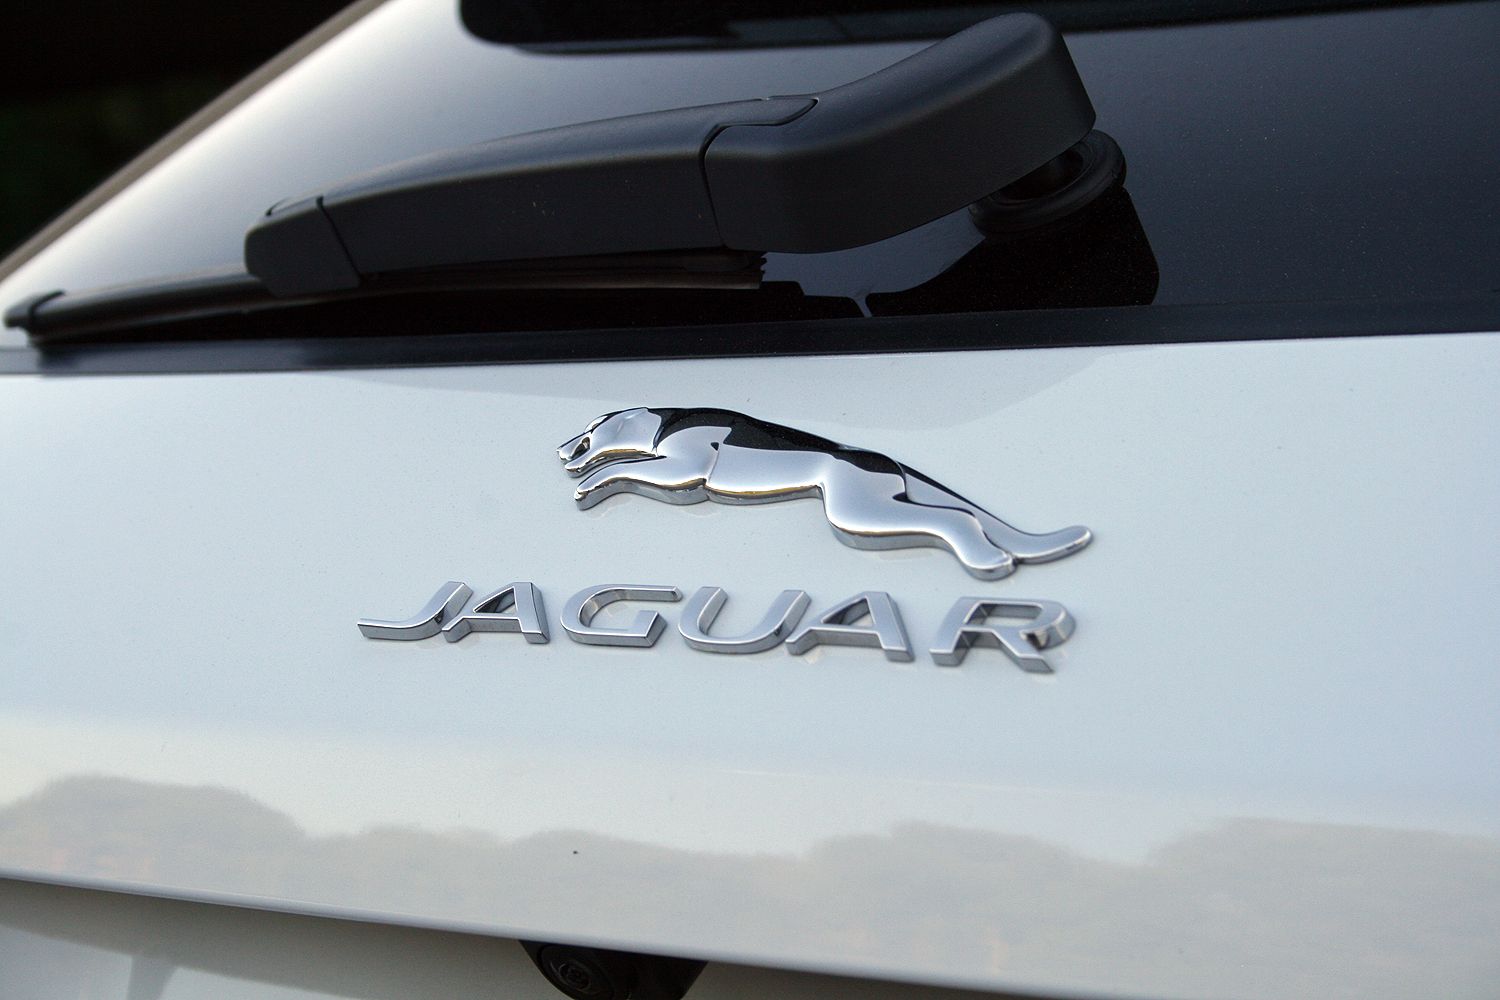 2017 Jaguar F-Pace – Driven